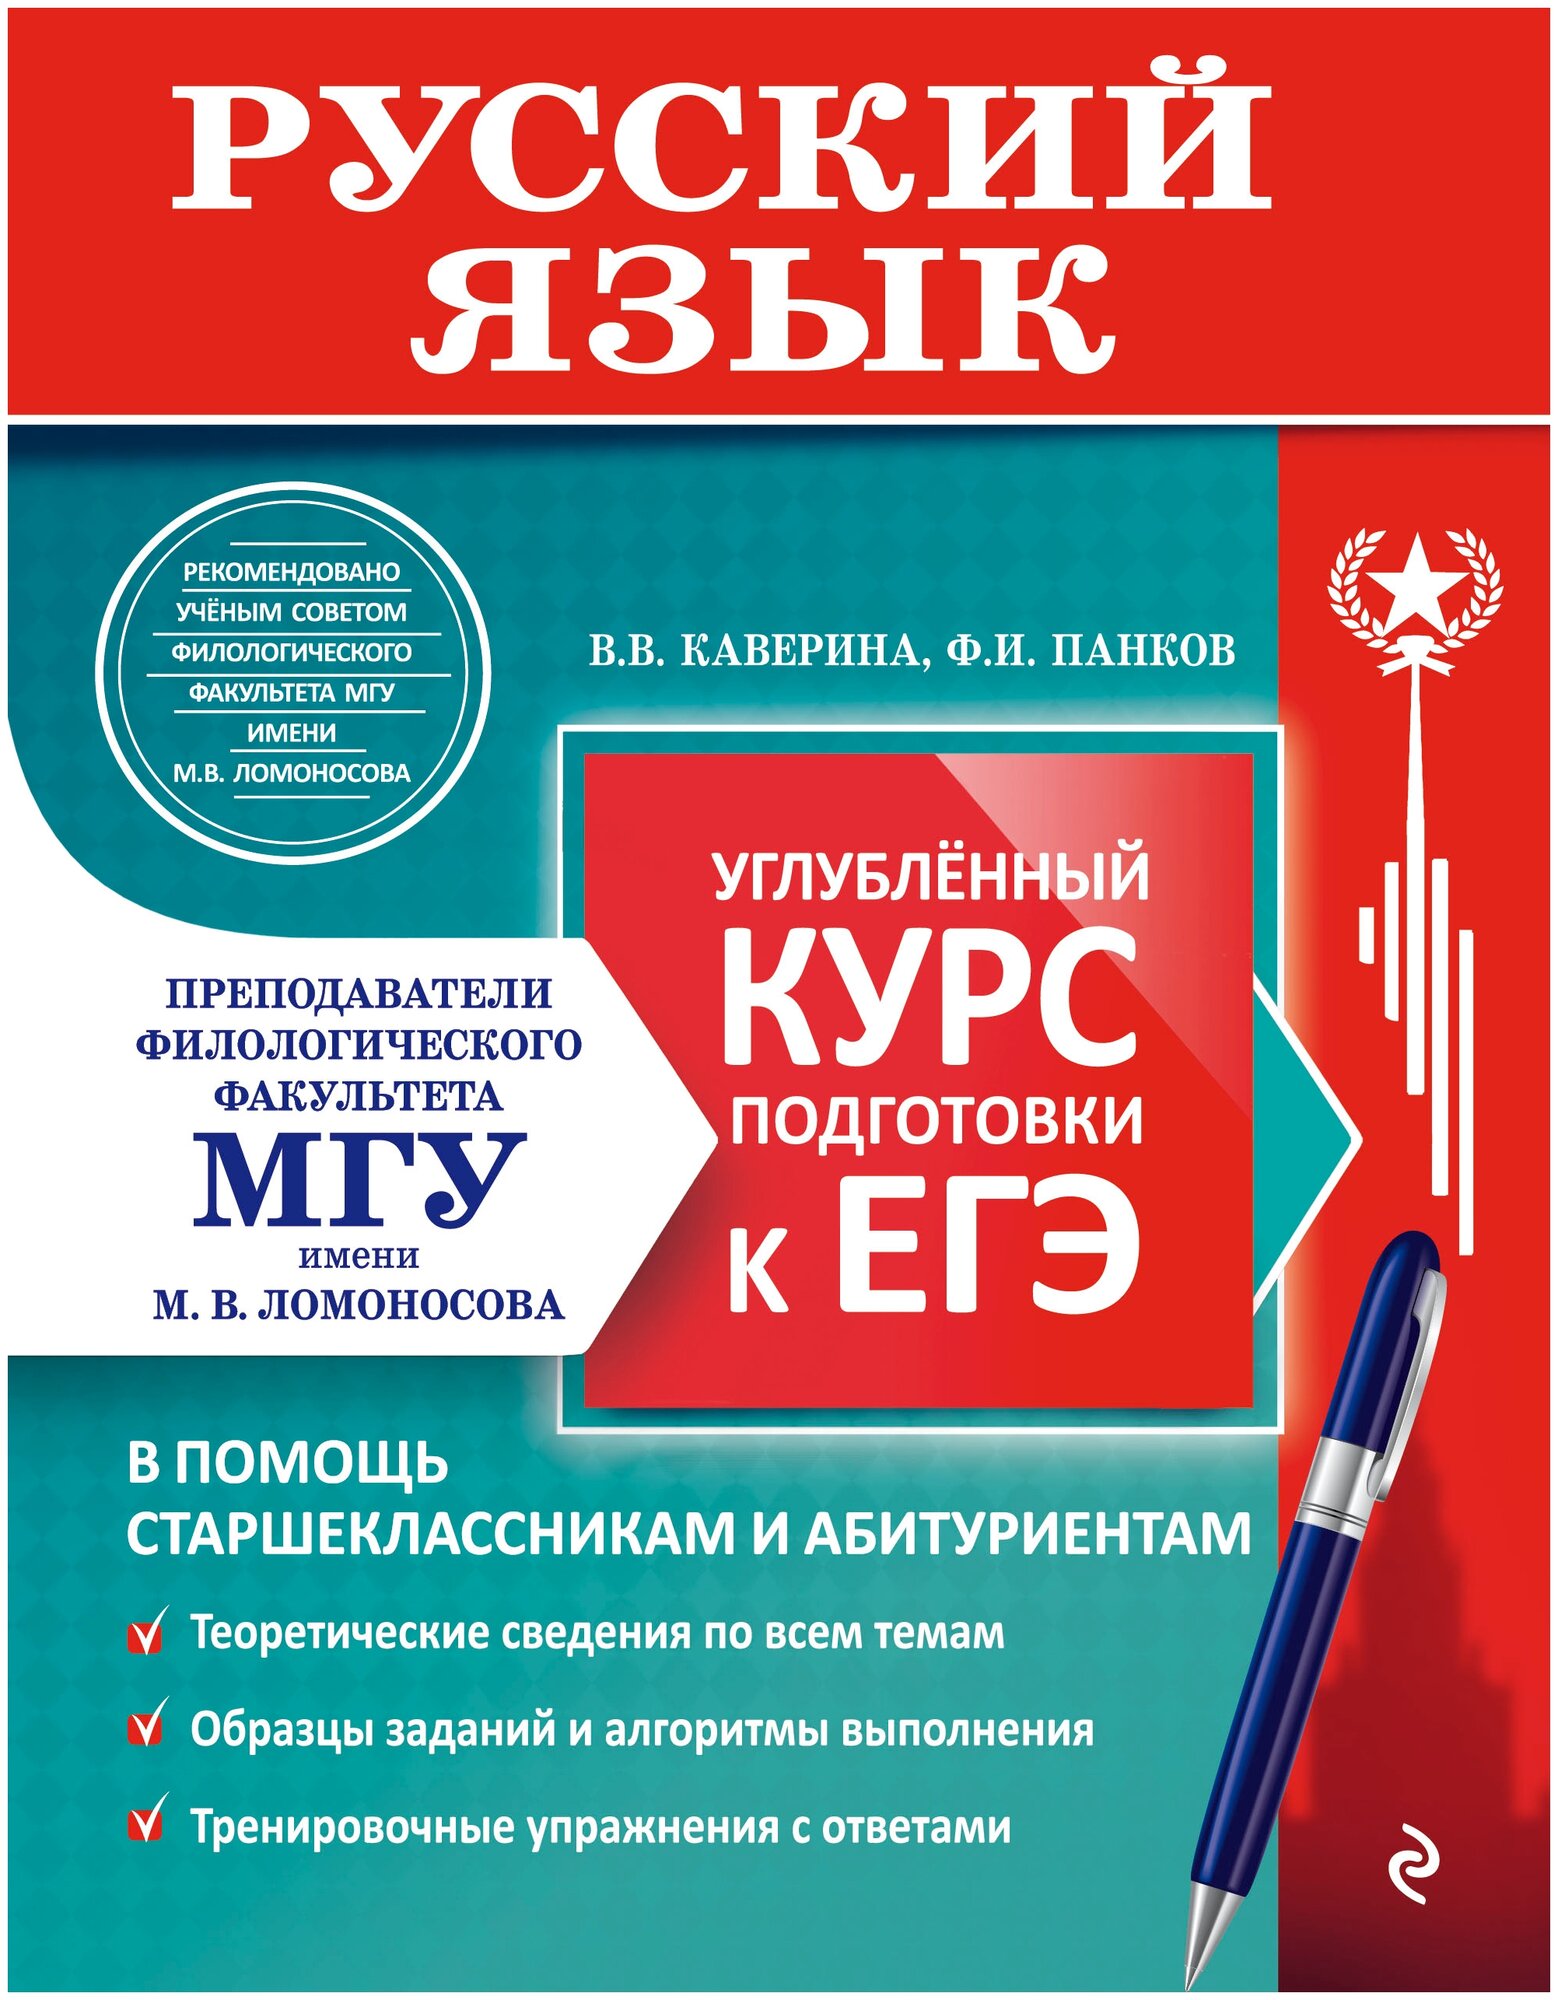 Русский язык. Углубленный курс подготовки к ЕГЭ - фото №2